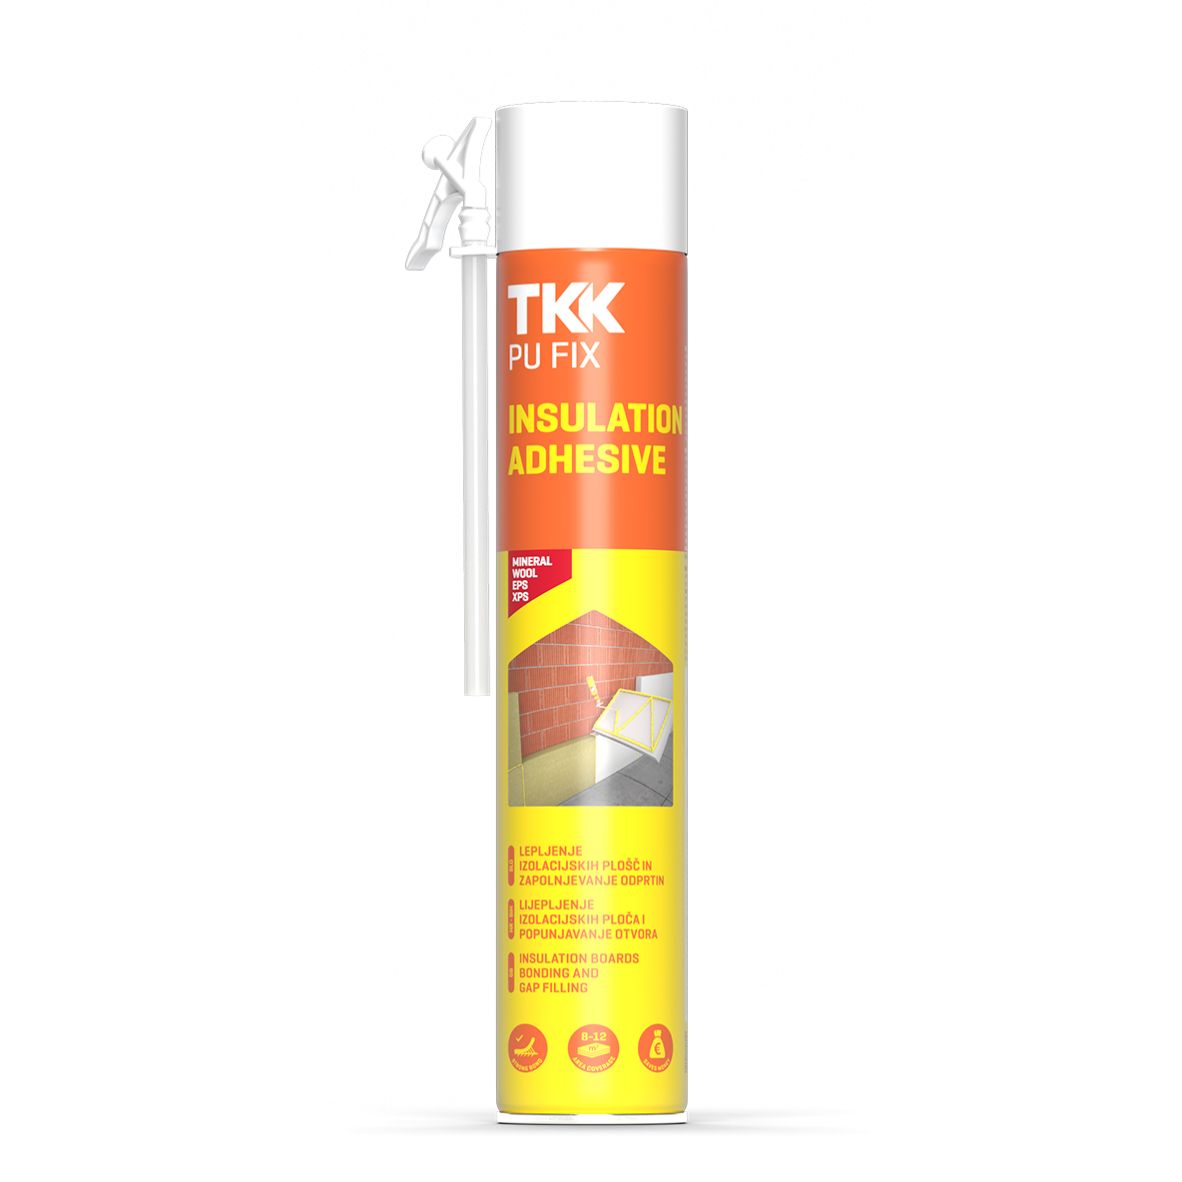 TKK Pu Fix Insulation Adhesive H